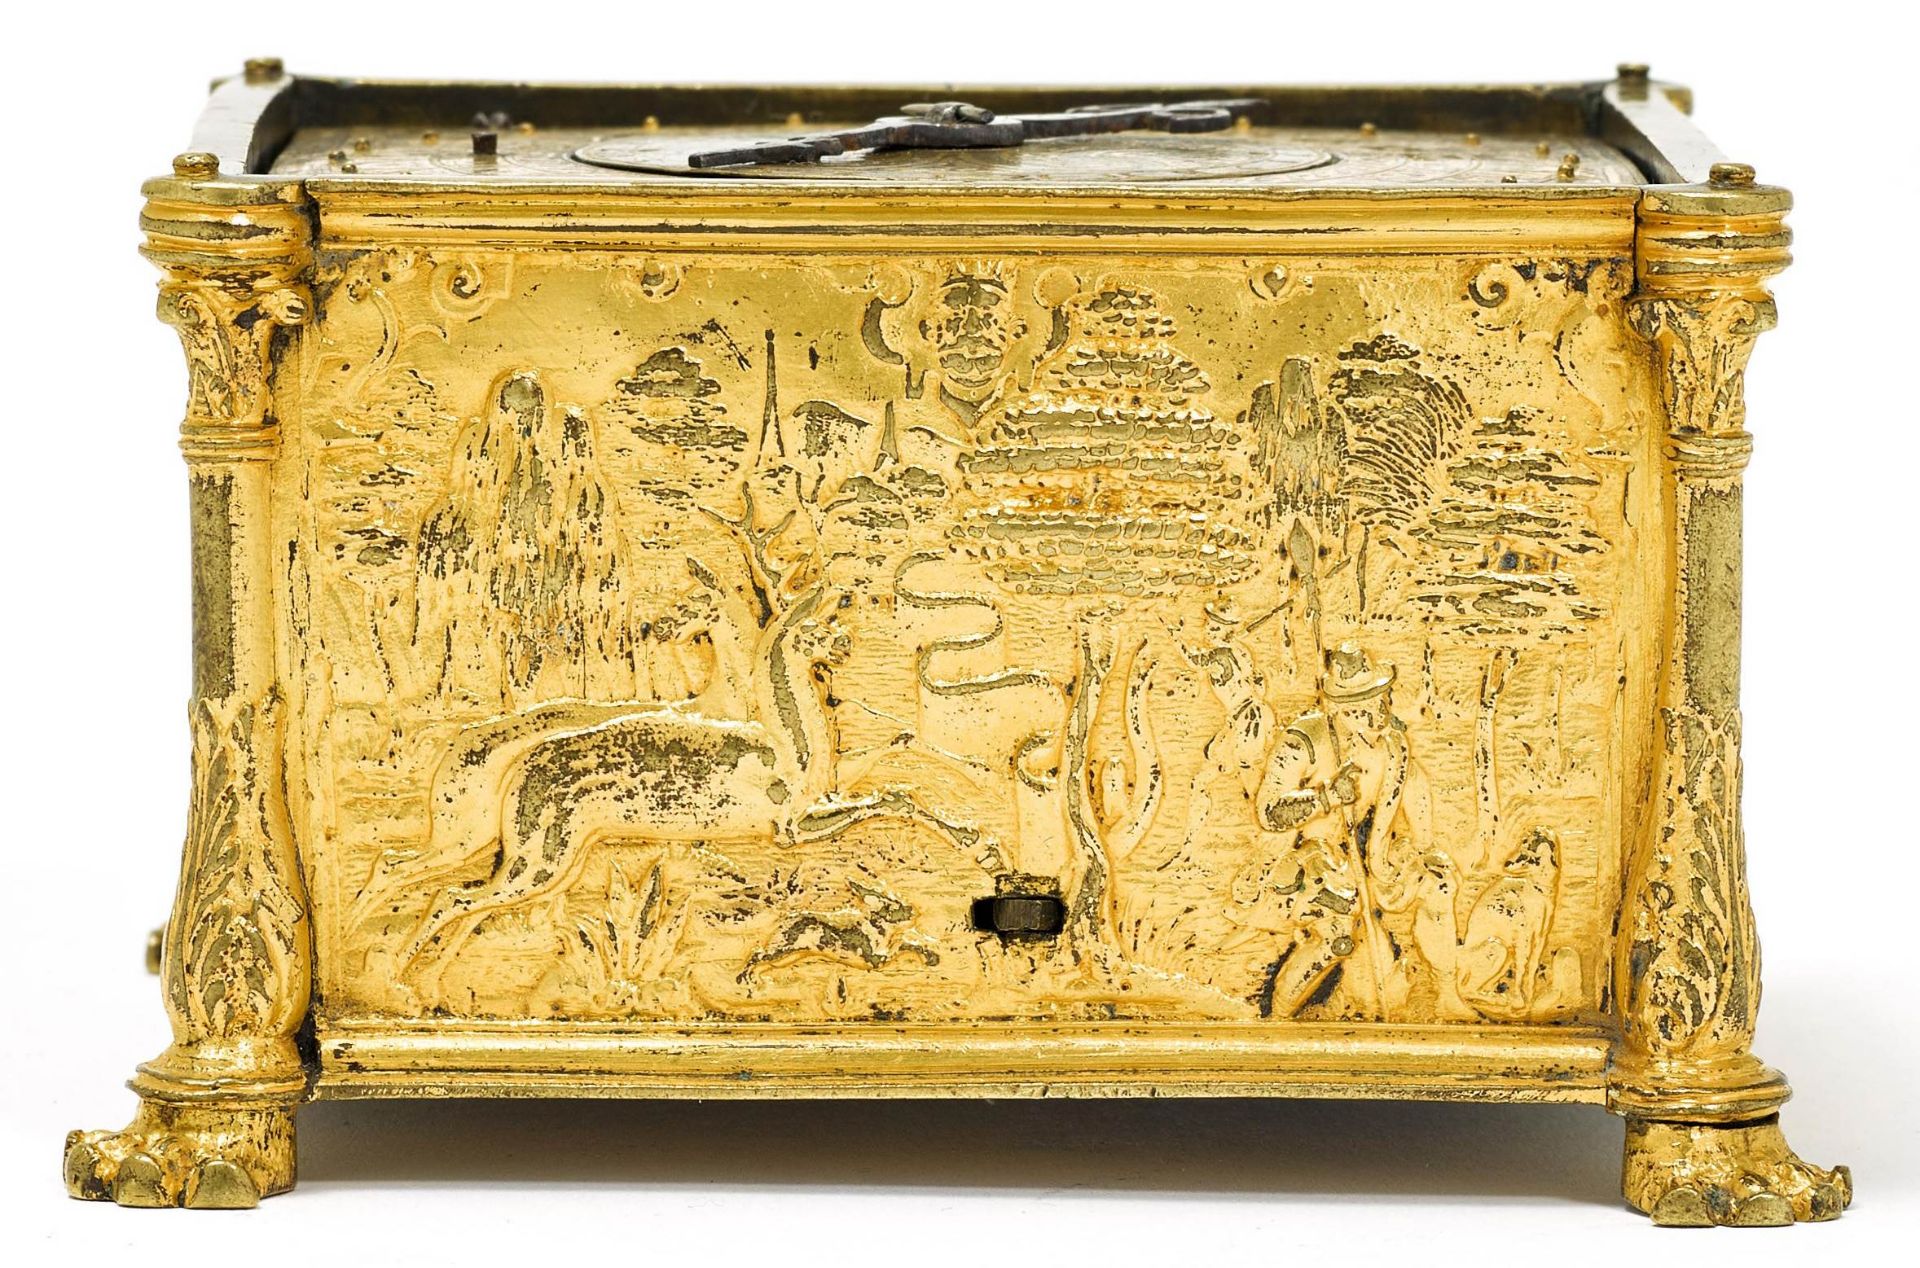 SCHÖNE TISCHUHR MIT WECKERSüddeutschland oder Schweiz, Renaissance um 1540–70.Bronze und Kupfer - Image 2 of 5